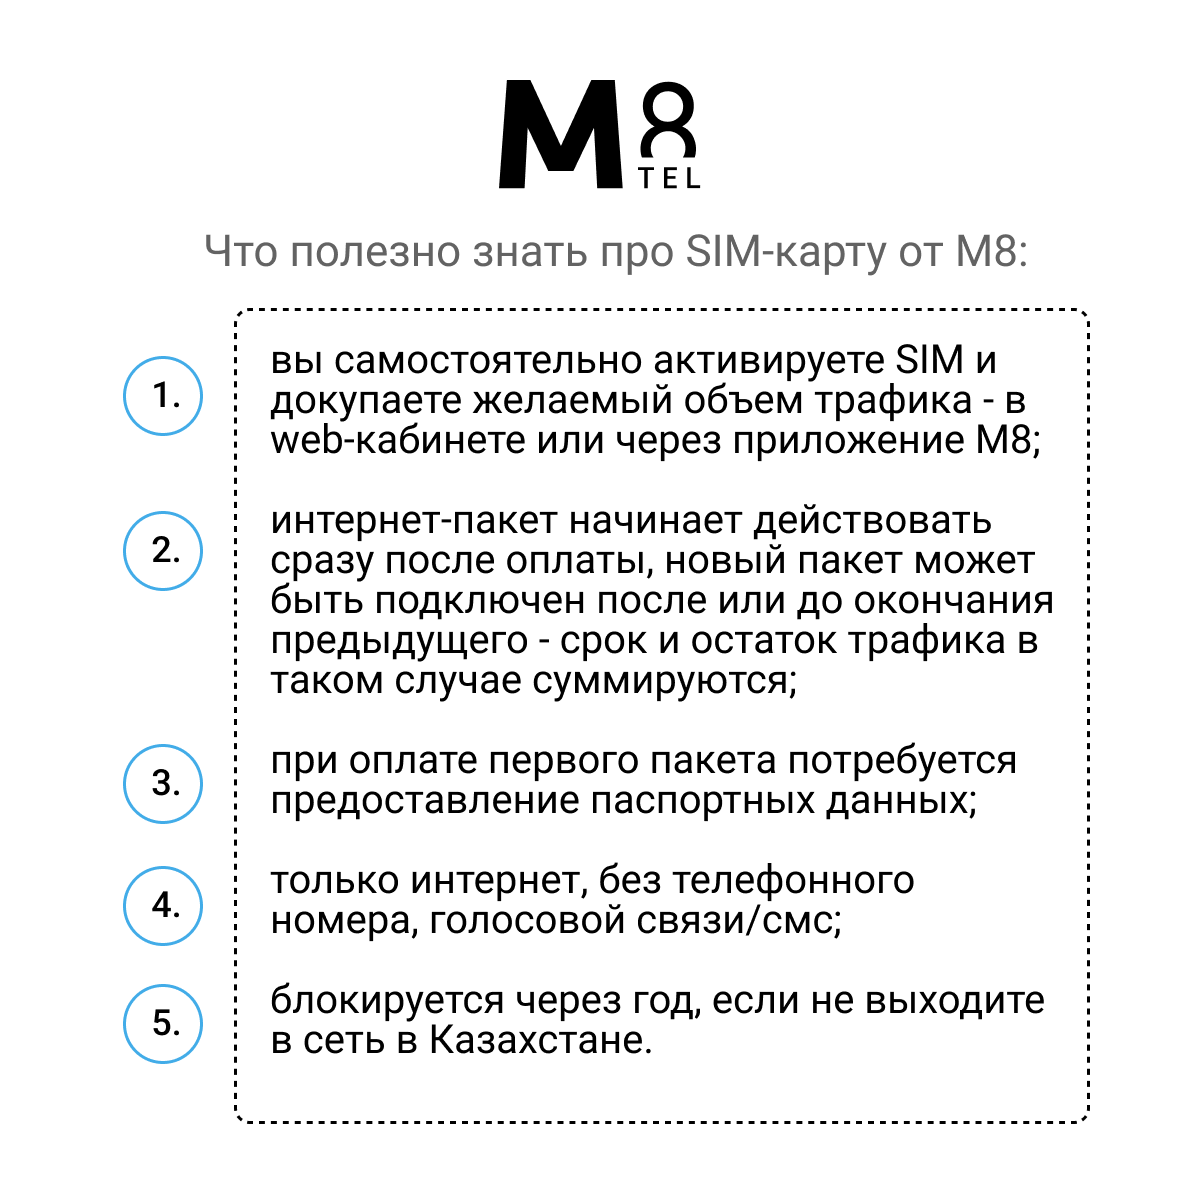 Туристическая SIM-карта для Казахстана от М8 (нано микро стандарт)